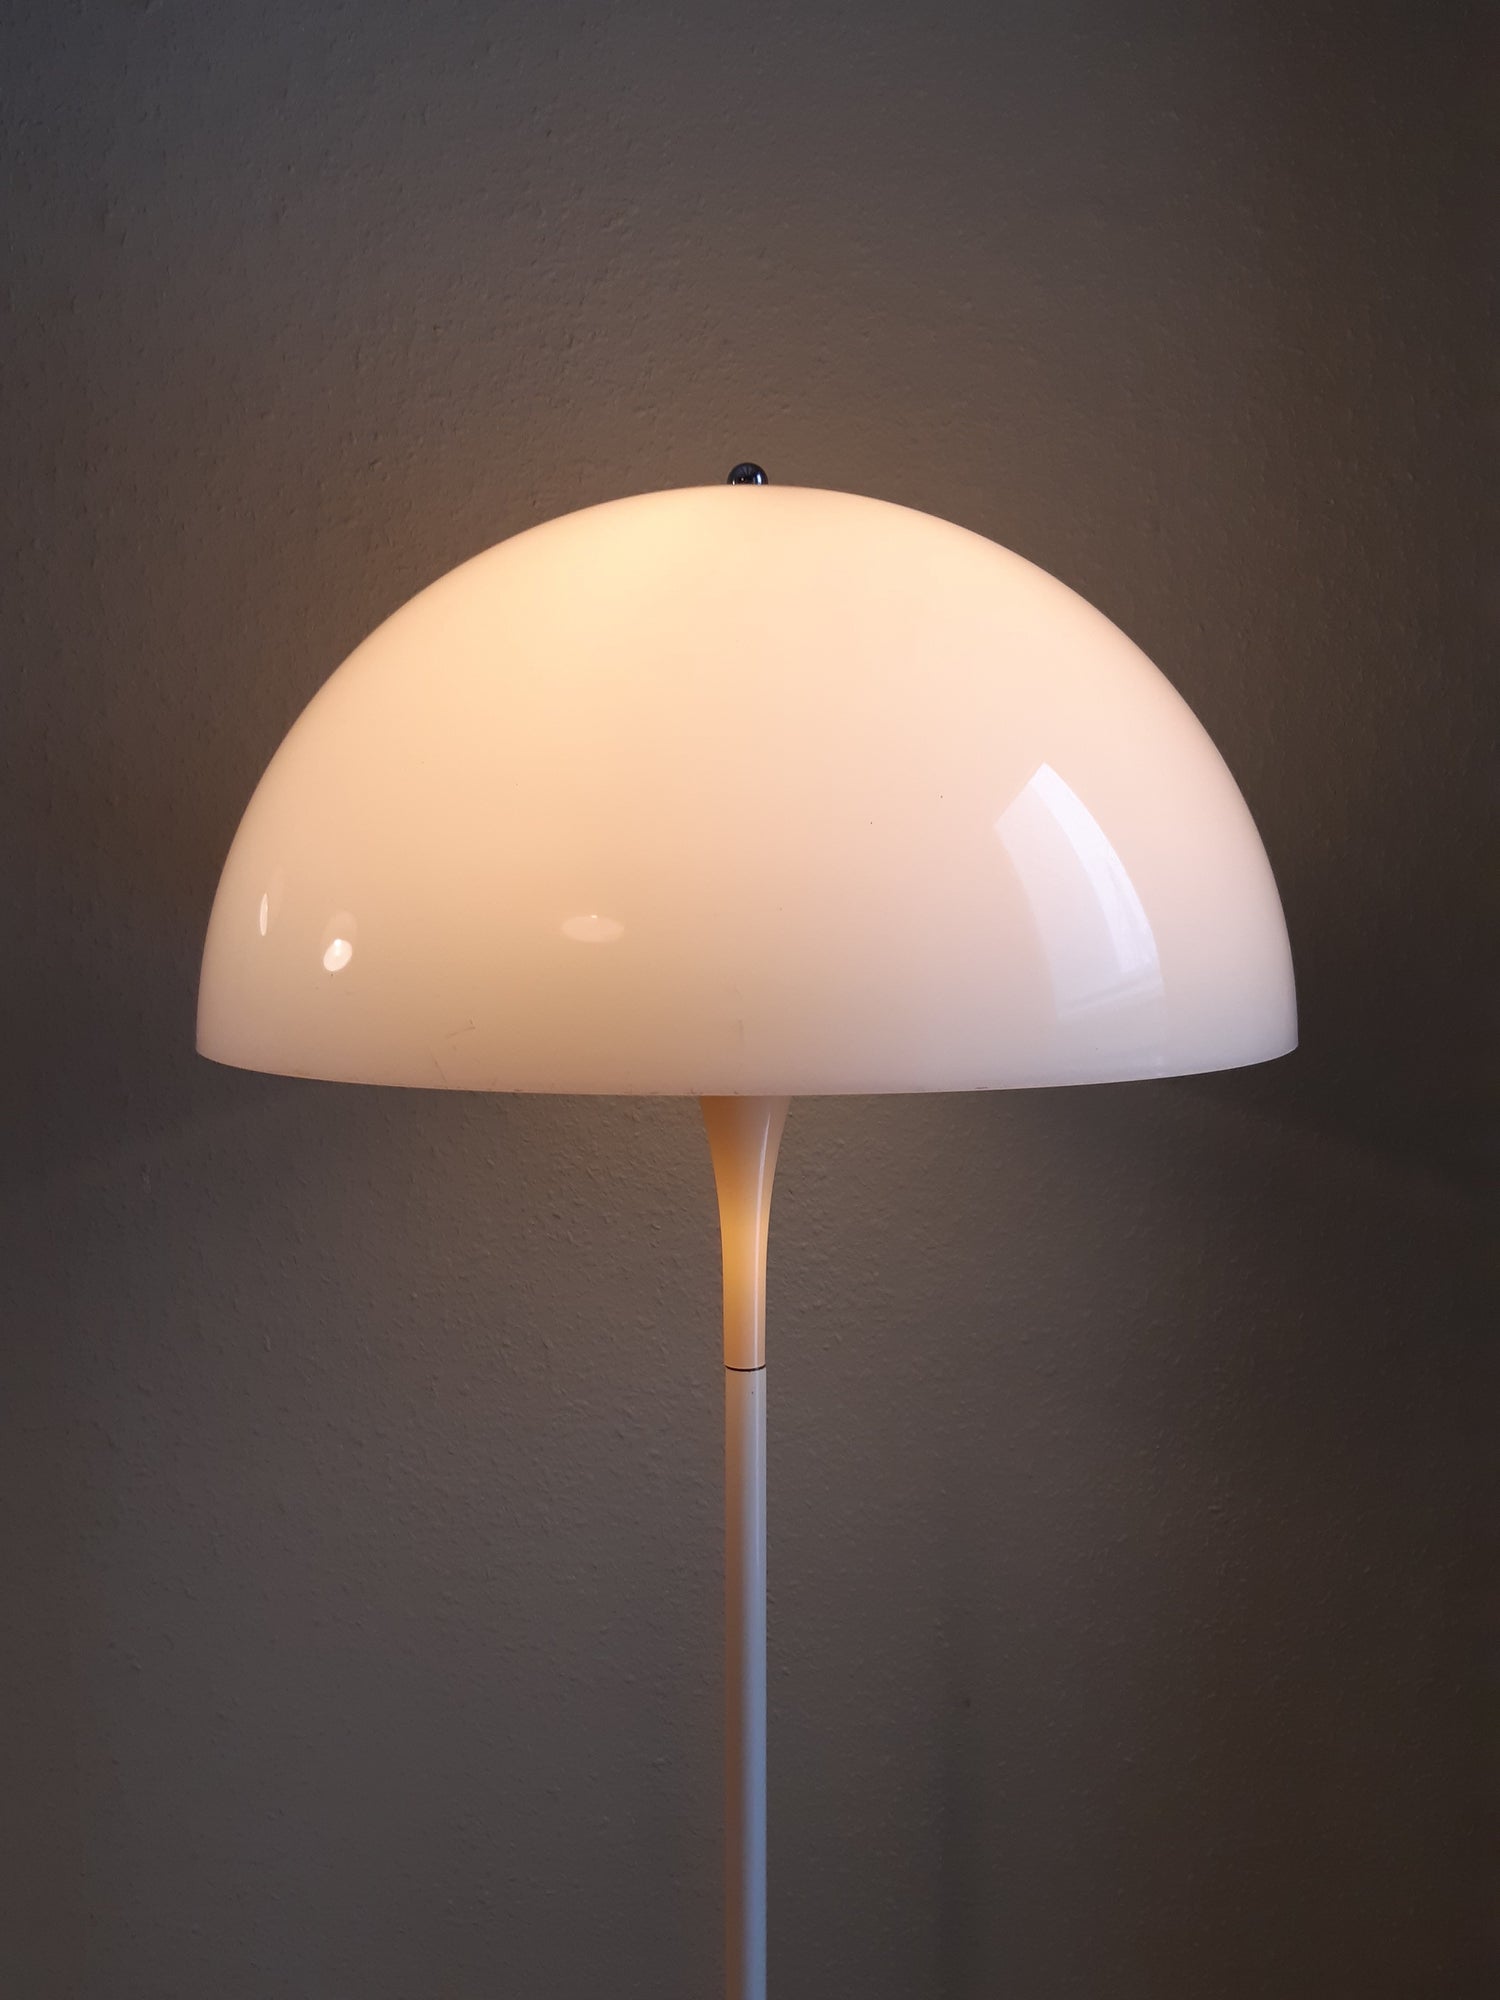 Louis Poulsen Panthella Mushroom Floor Lamp by Verner Panton (Space Age Lamp)